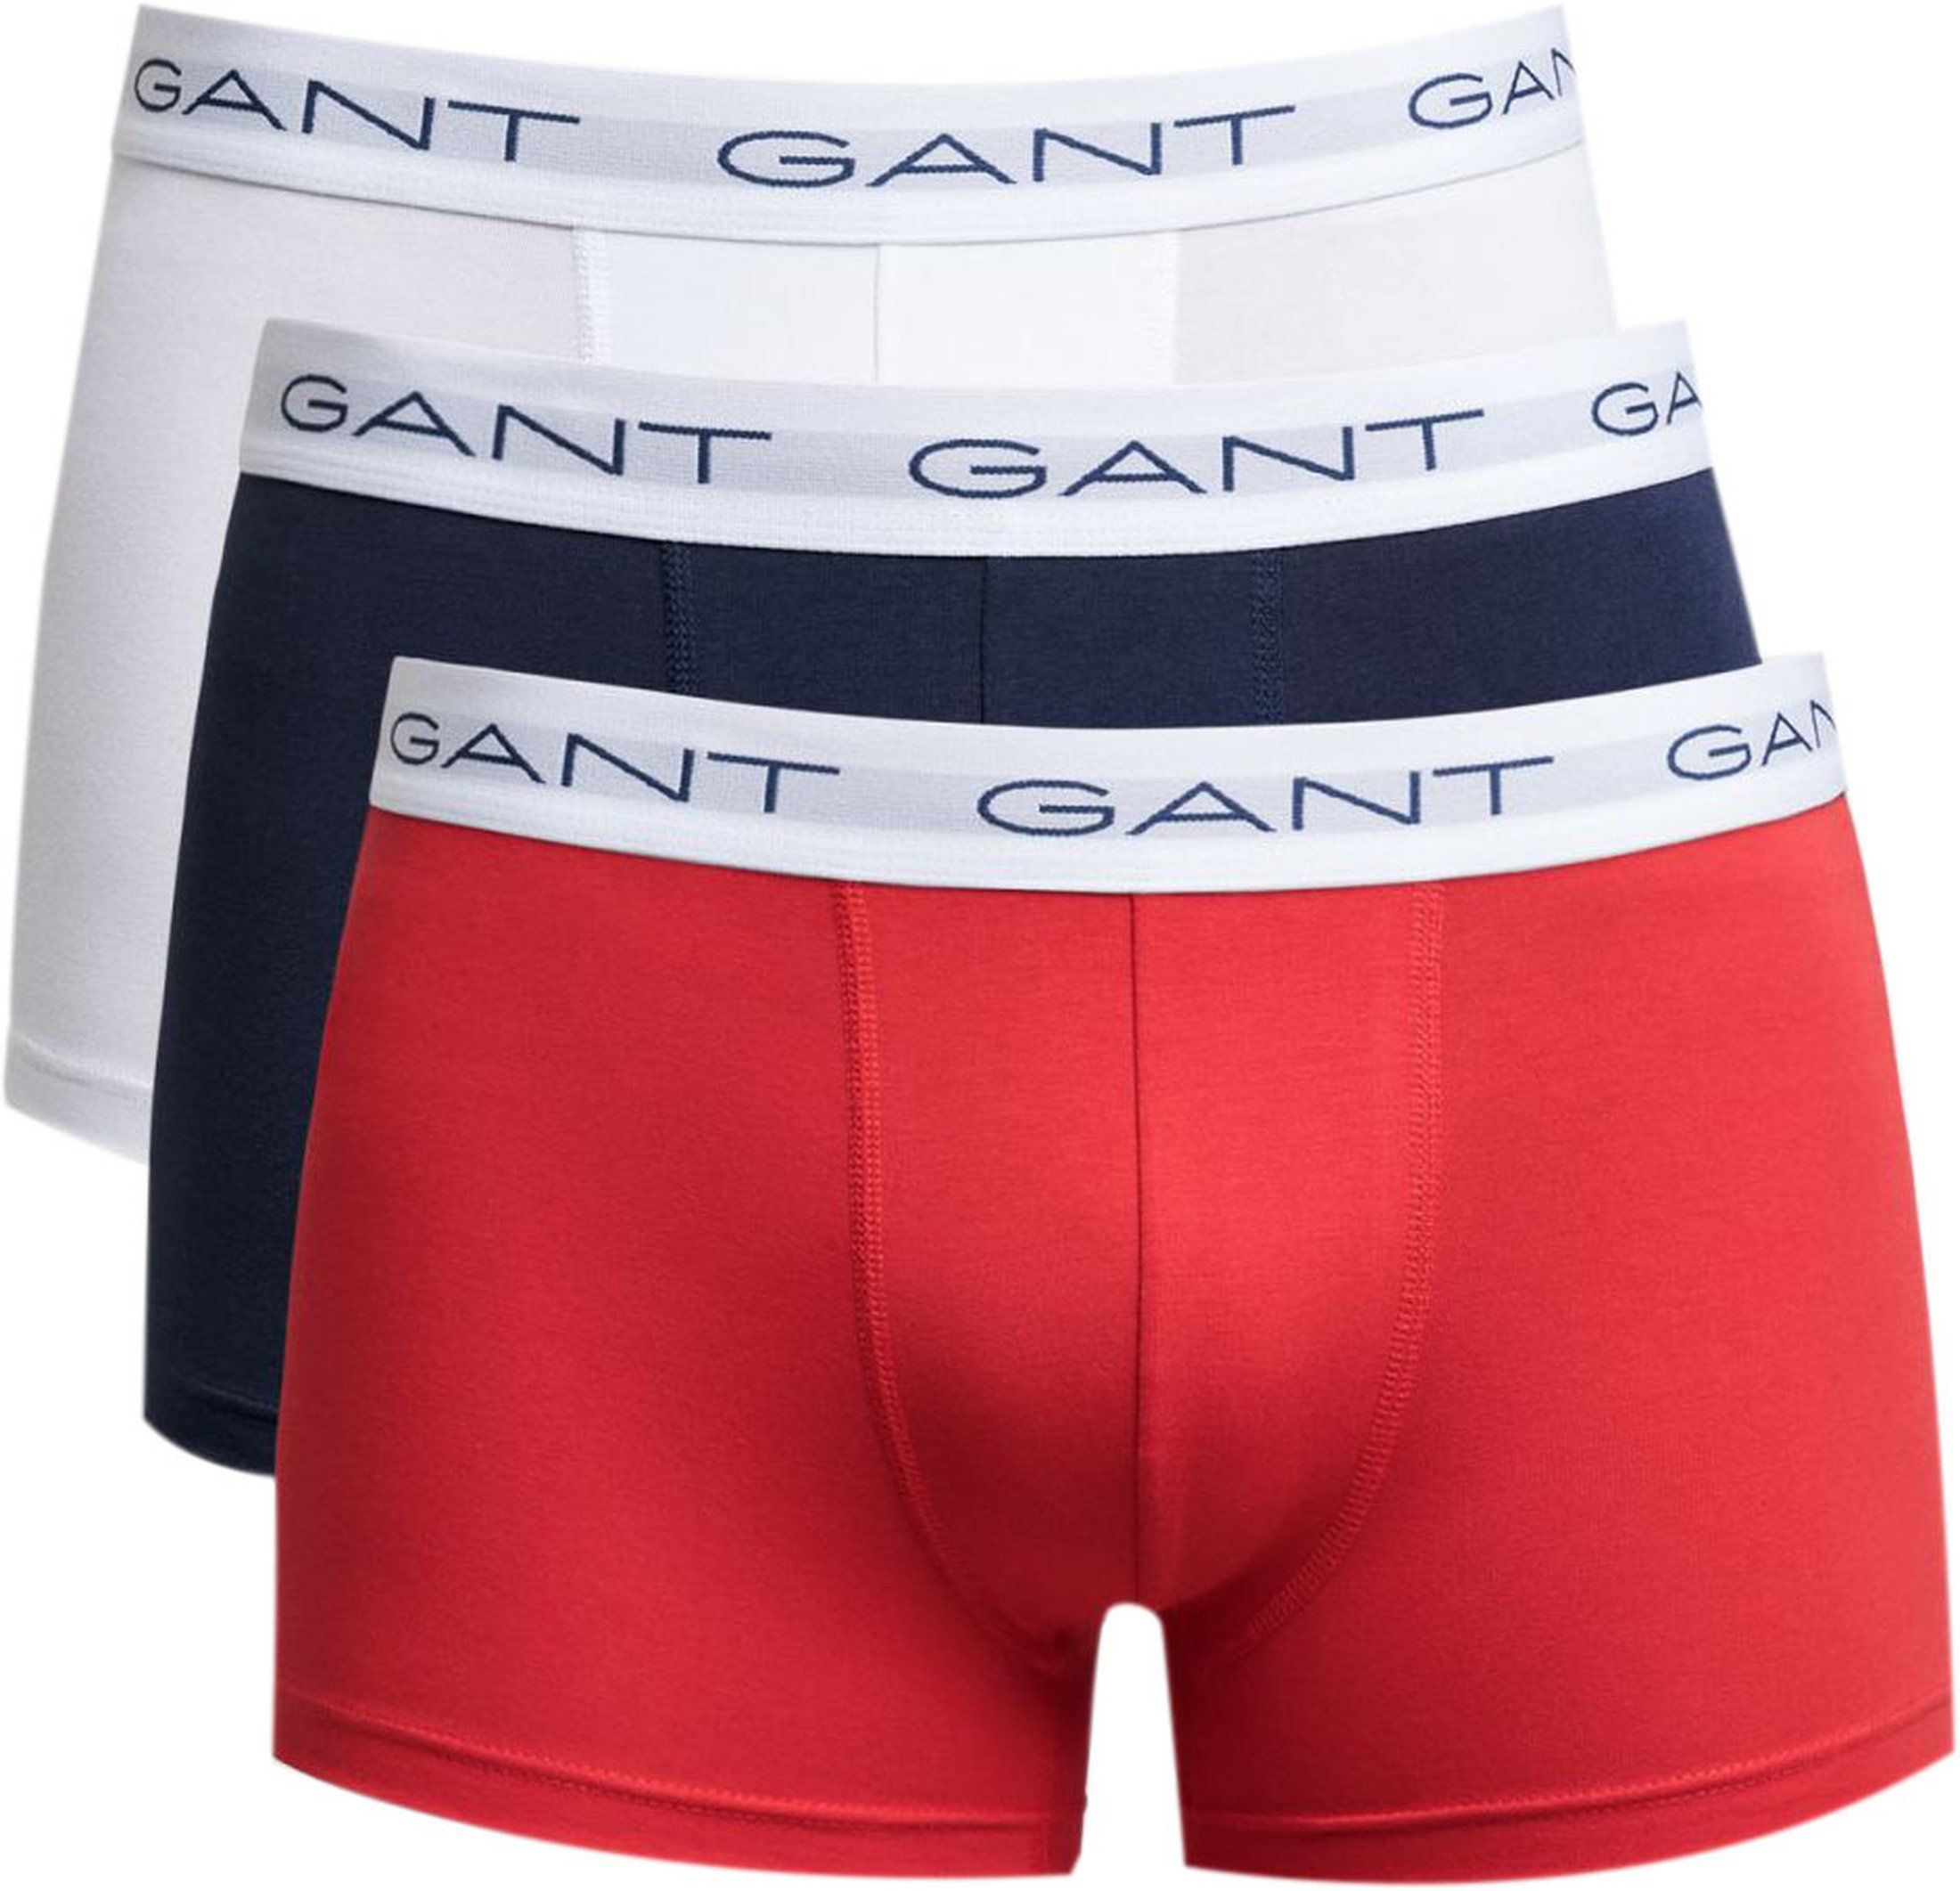 Gant Boxers Lot de 3 Multicolores Rouge Blanc Bleu foncé taille L